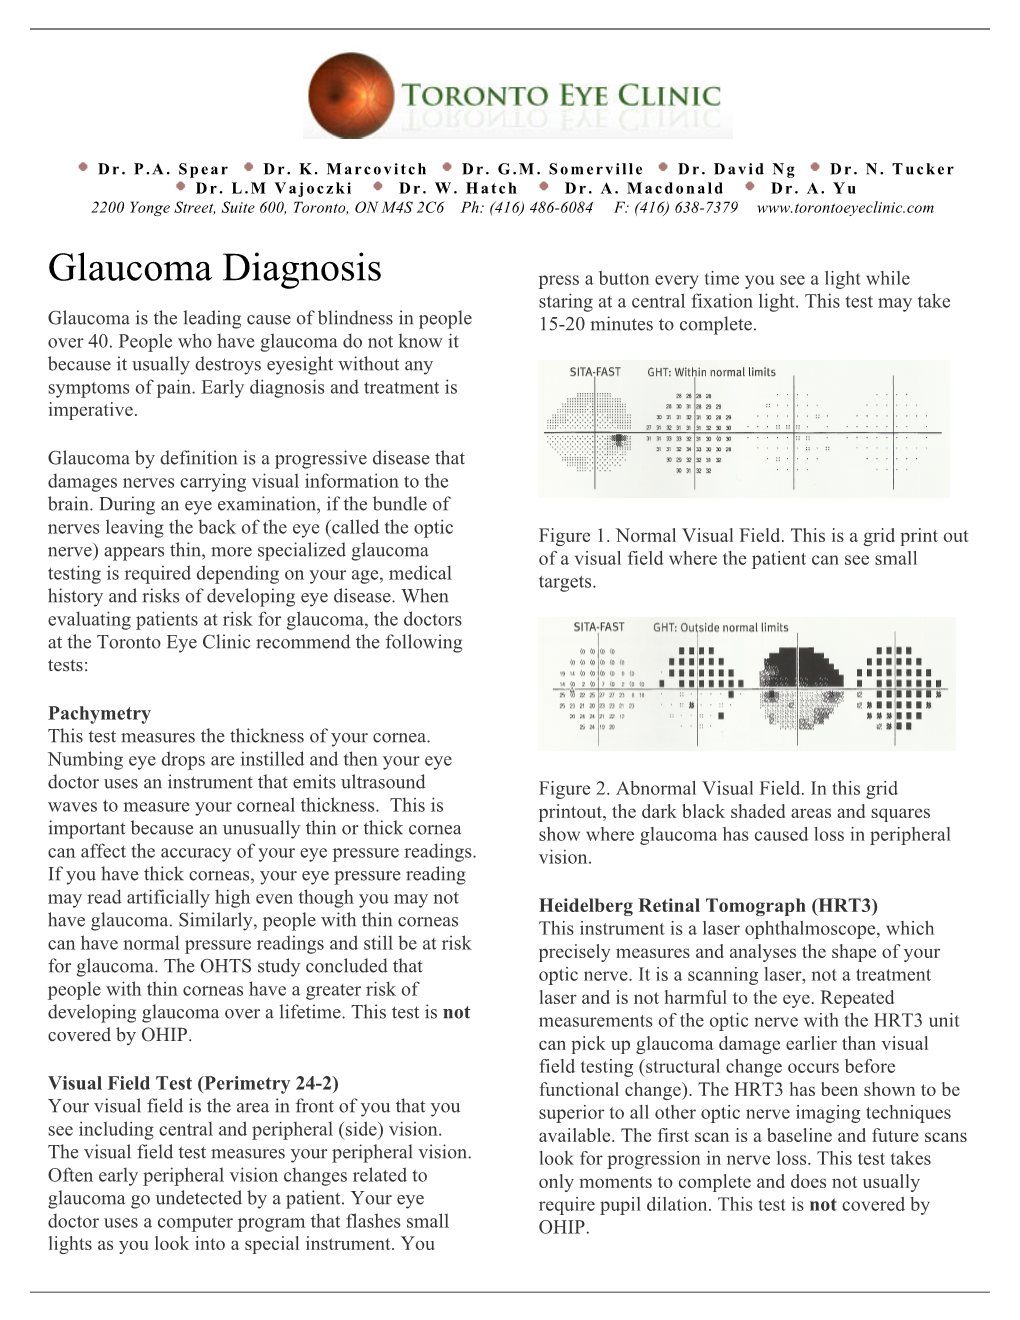 Glaucoma (Diagnosis of Glaucoma)